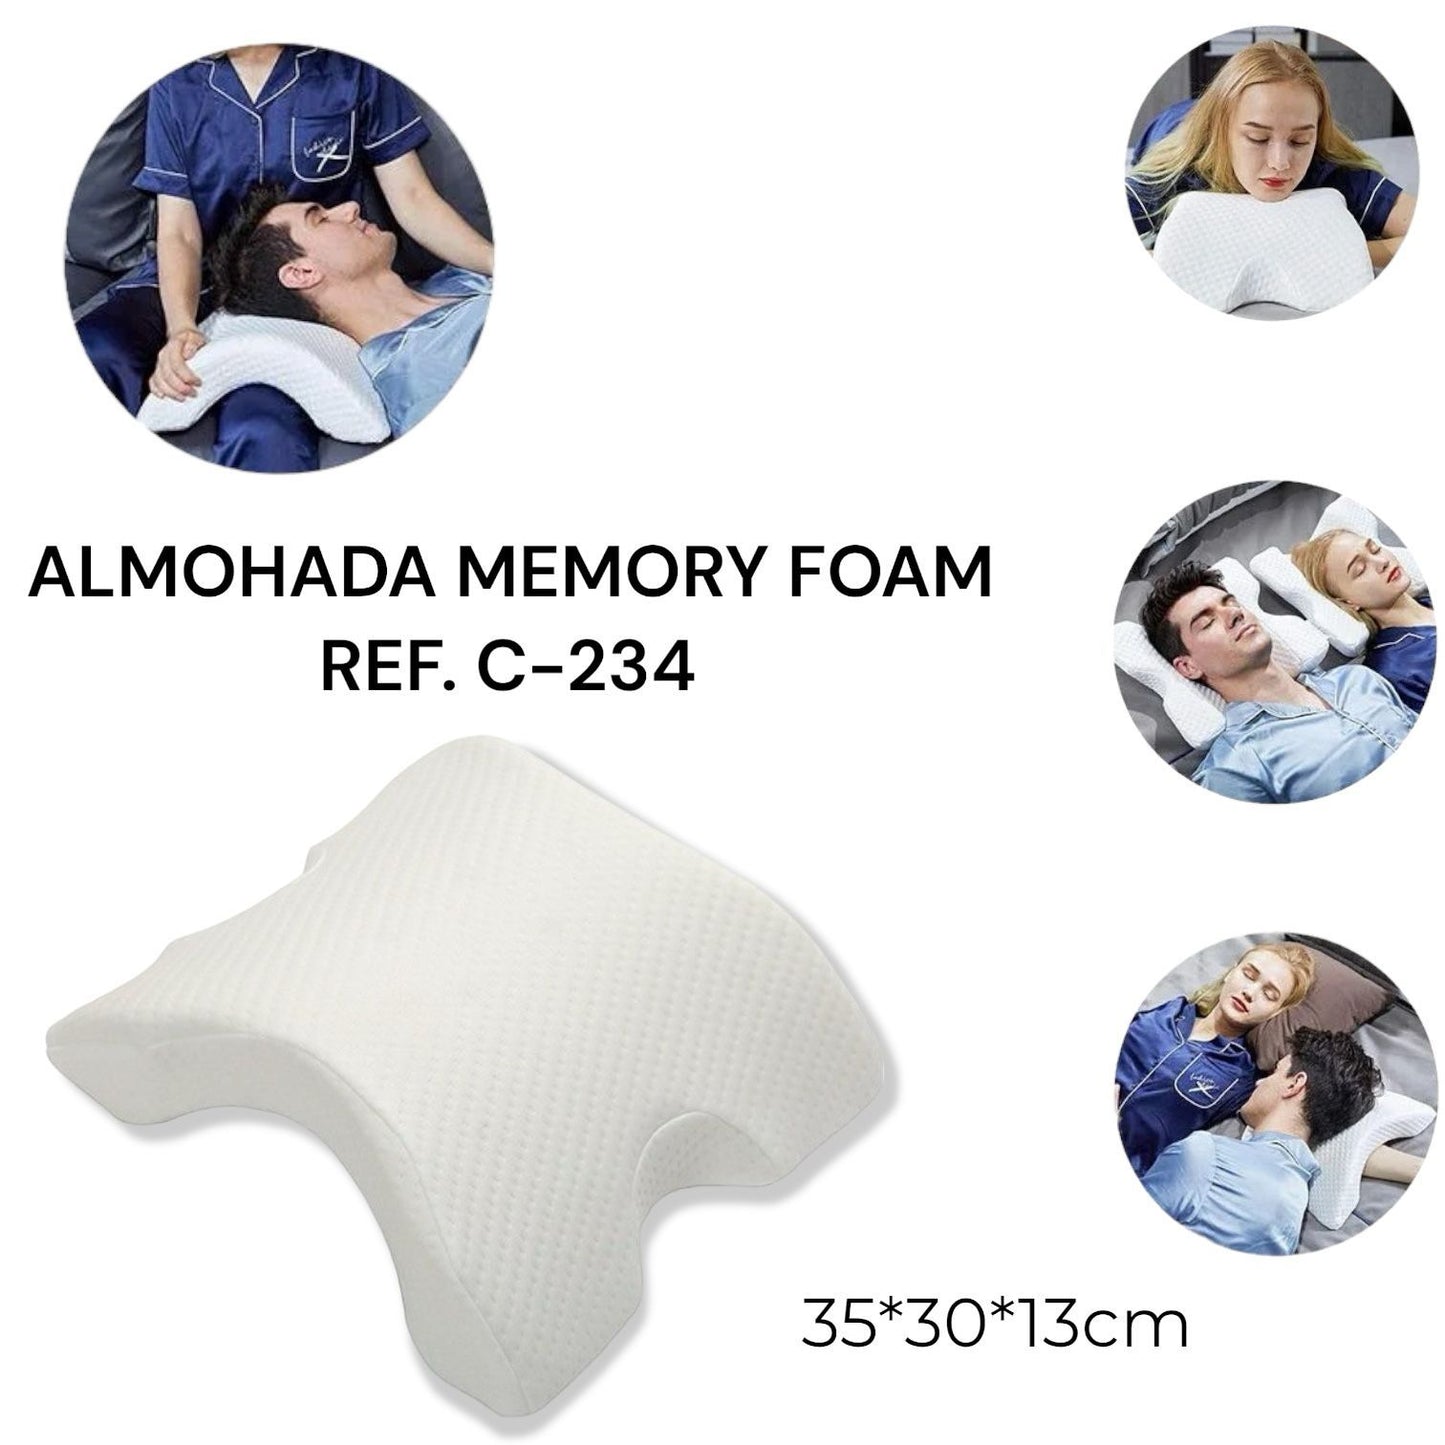 ALMOHADA MEMORY FOAM 😴 REF. C-234